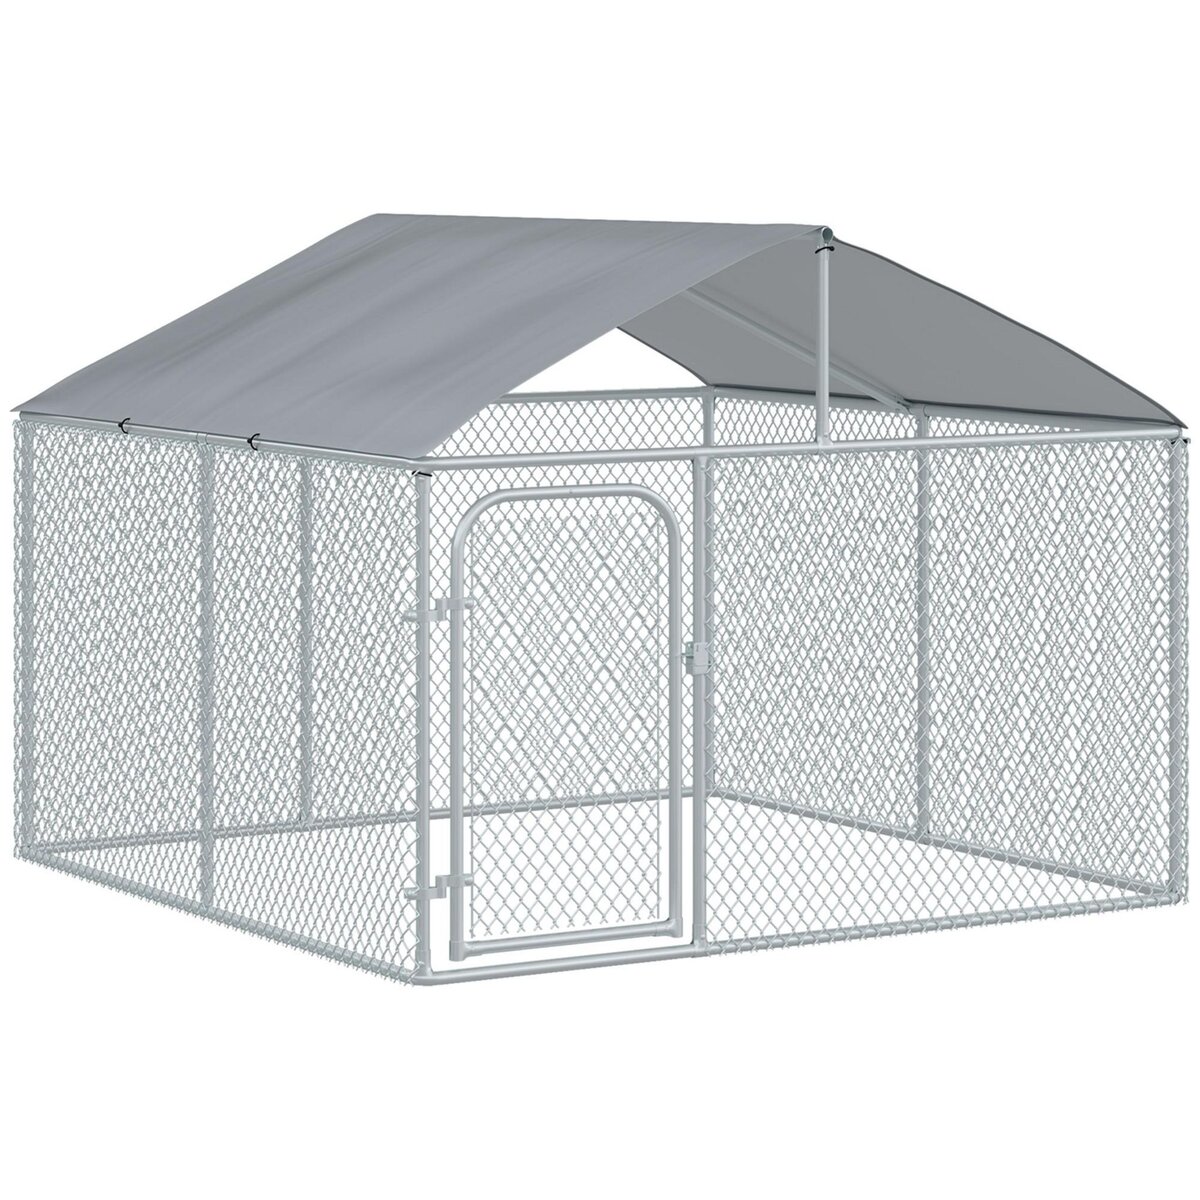 Chenil extérieur cage enclos parc animaux chien extérieur avec